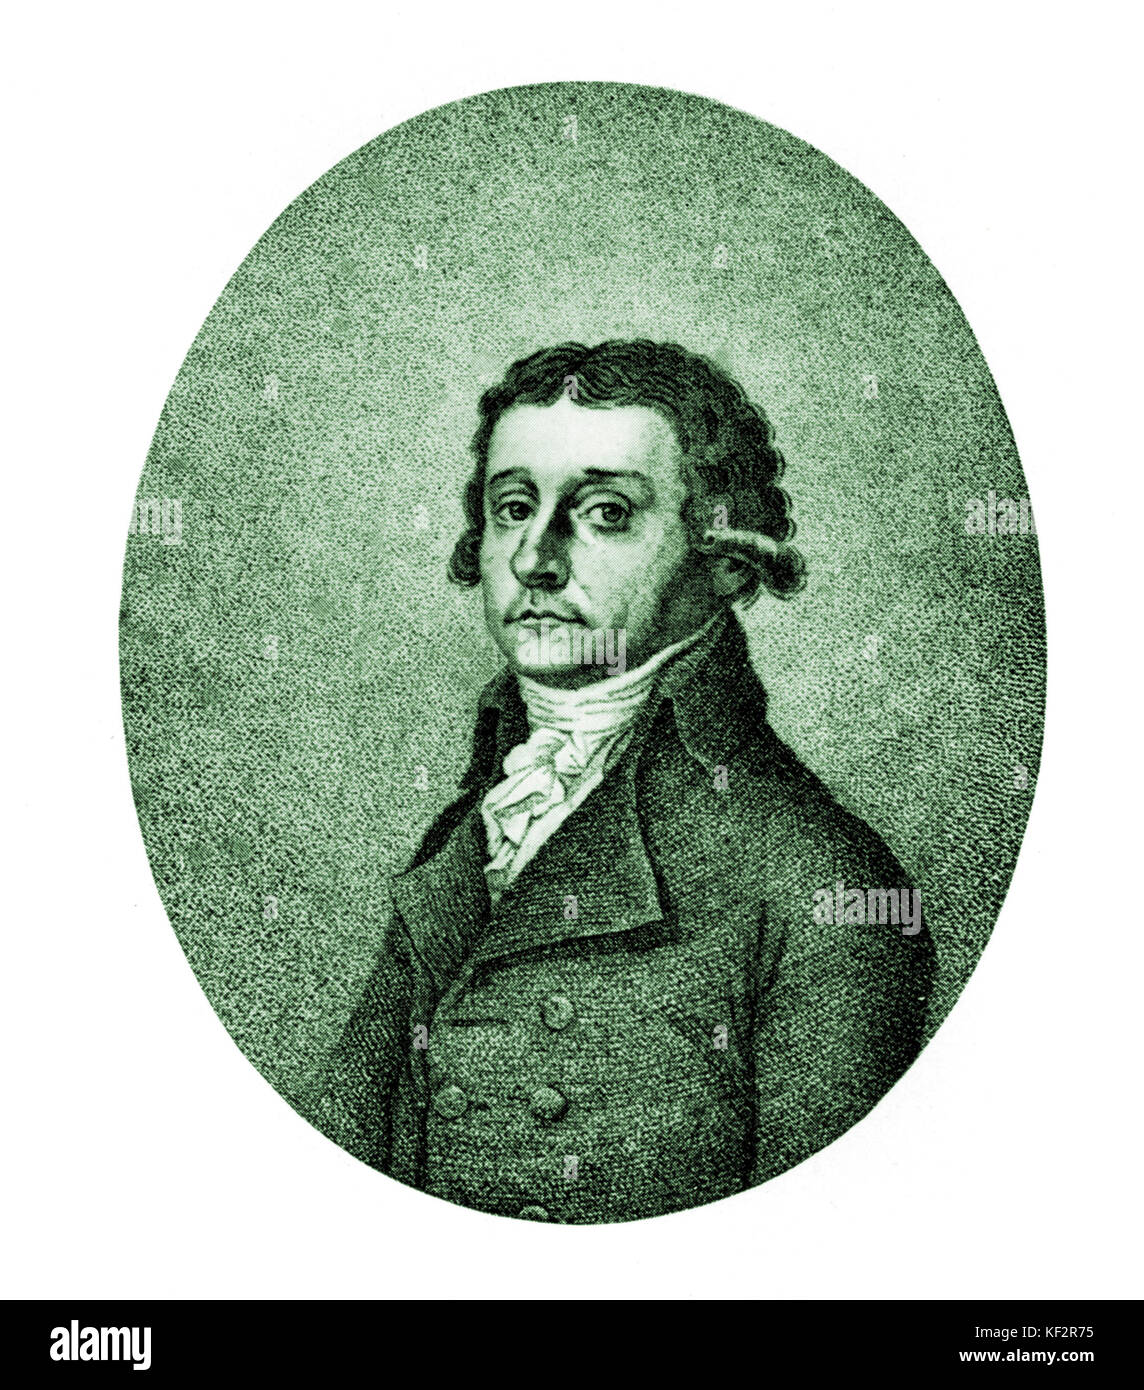 Antonio Salieri Porträt, 1825. Italienischer Komponist, Dirigent und Lehrer (1750-1825). Stockfoto